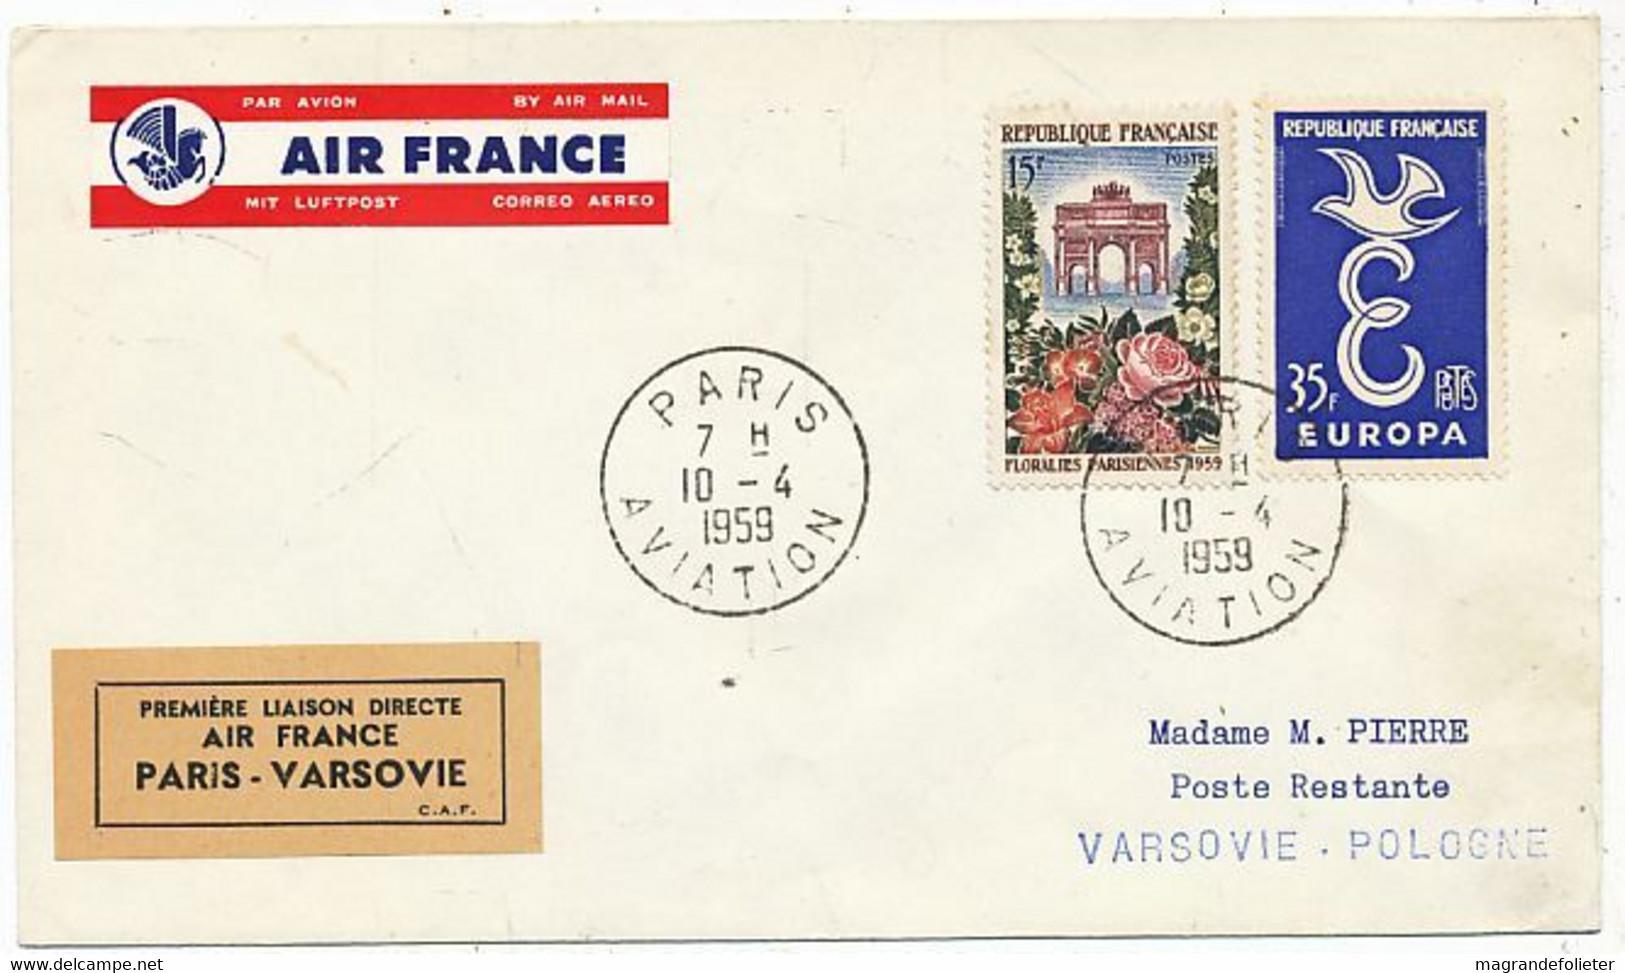 AVION AVIATION AIRLINE AIR FRANCE PREMIERE VOL DIRECT PARIS-VARSOVIE 1959 - Vliegvergunningen